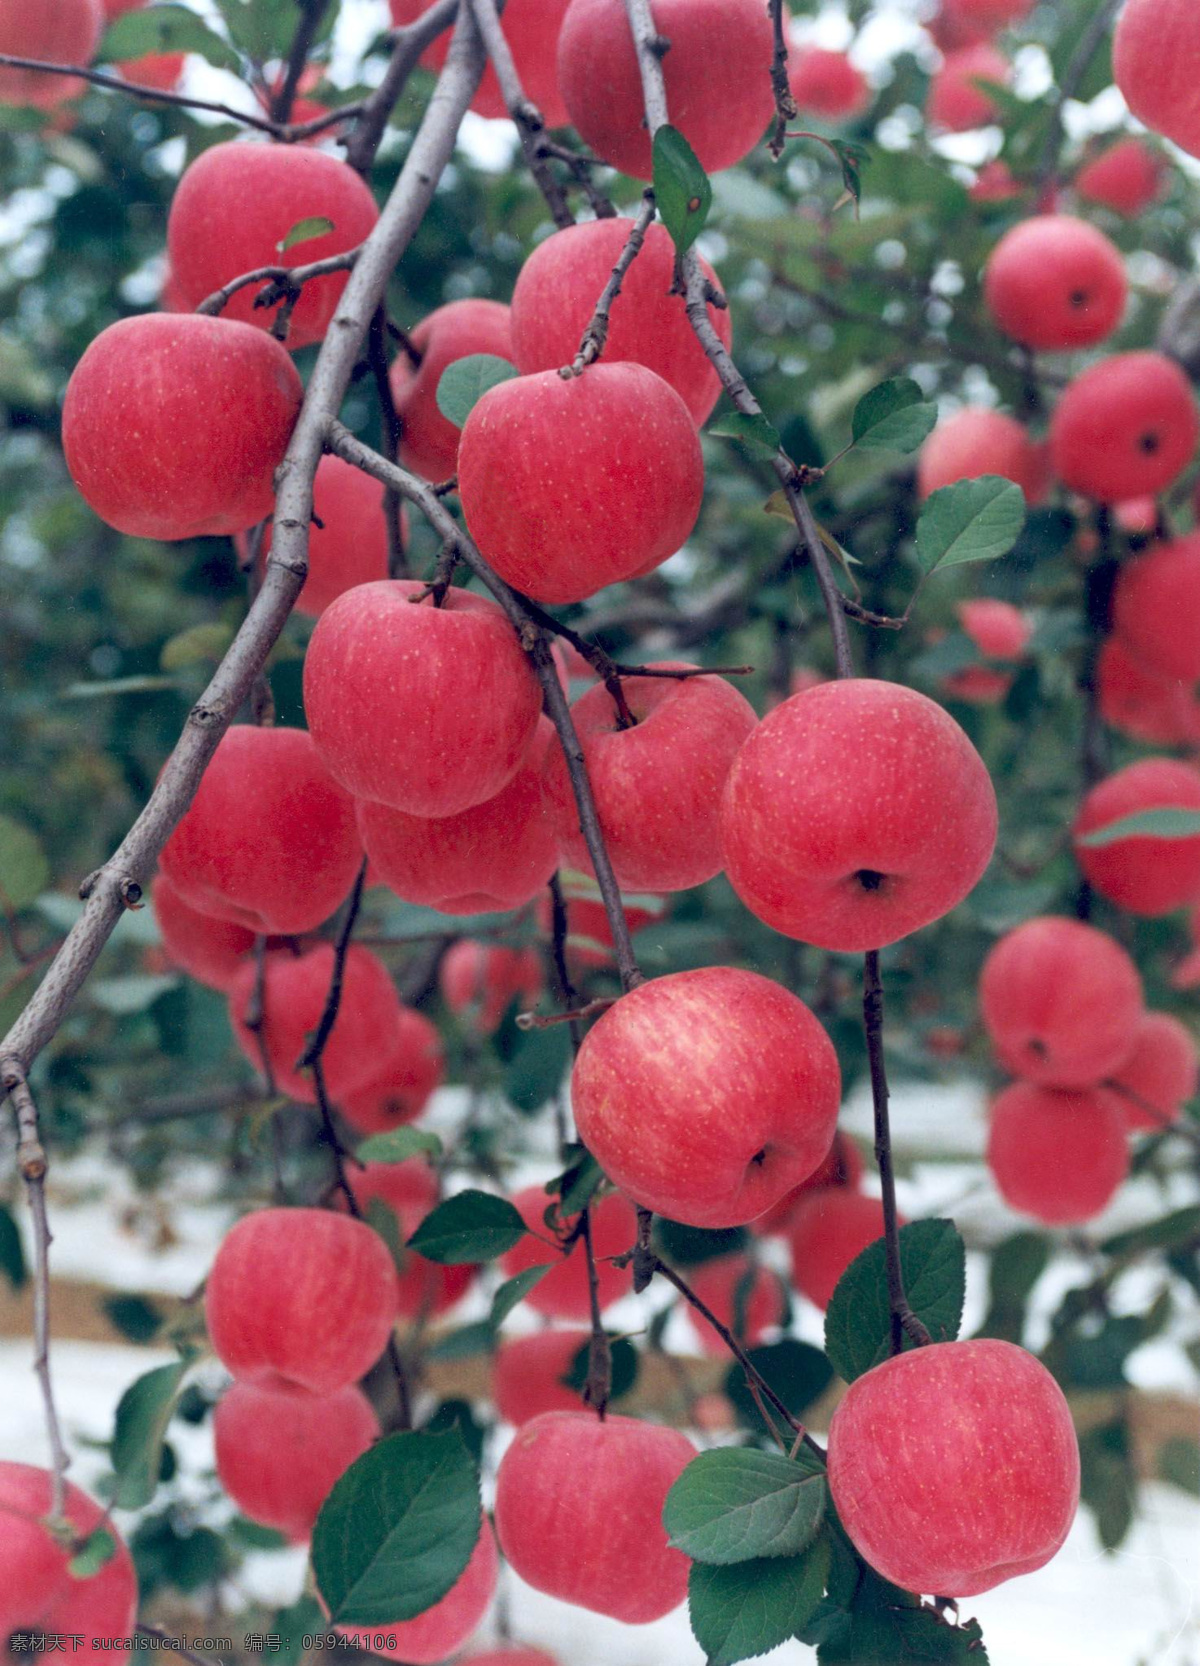 硕果累累 红苹果 果实 收获 自然景观 自然风景 草木有情 摄影图库